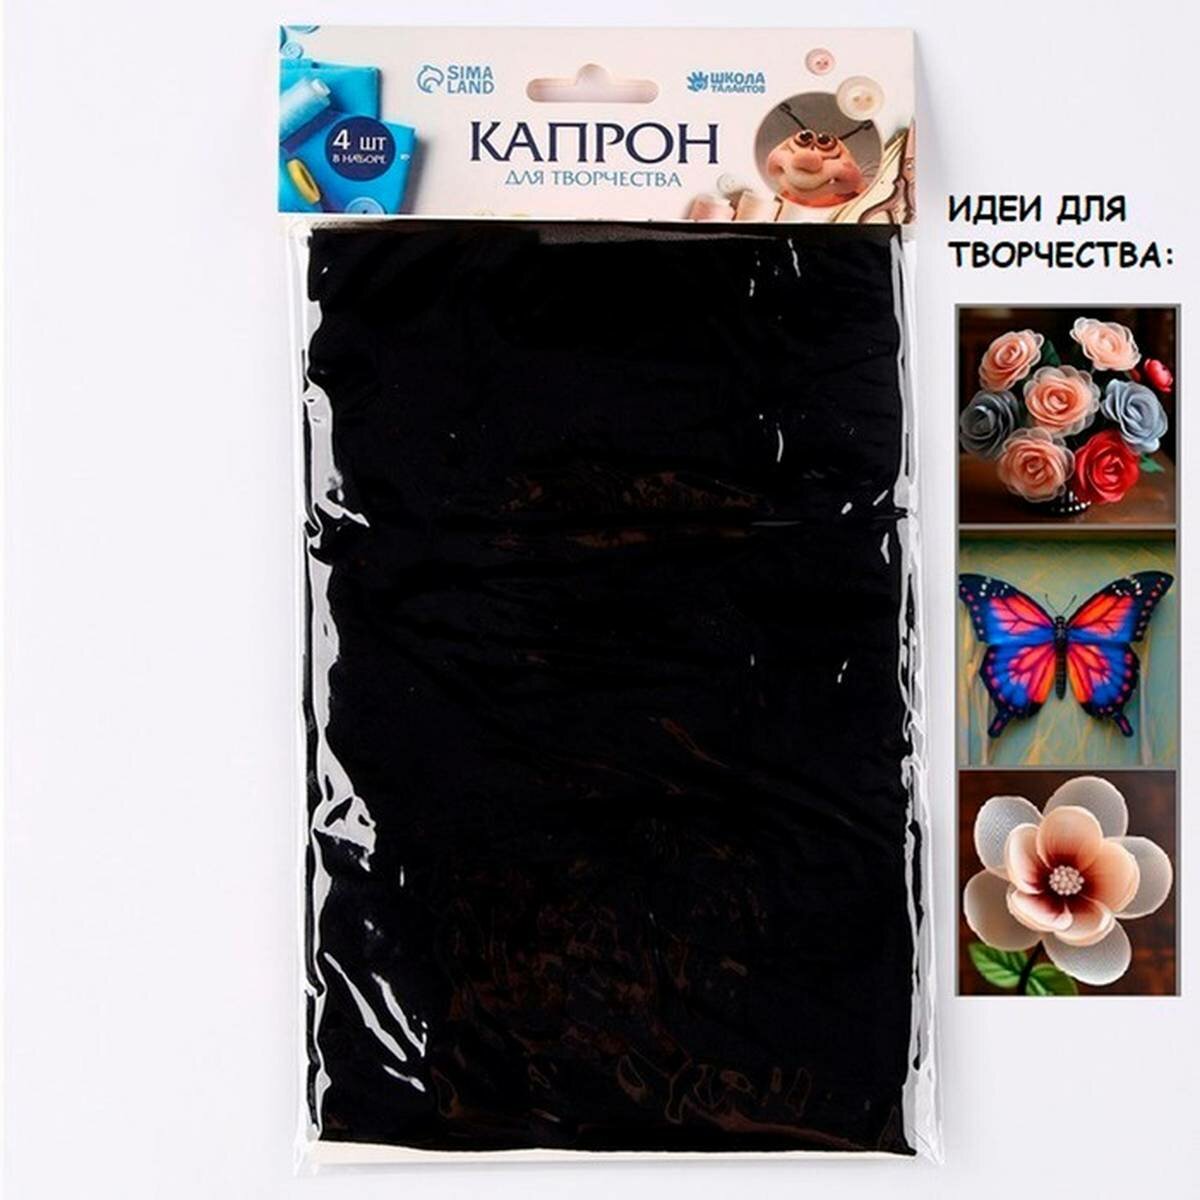 Ткань для рукоделия Школа талантов - капрон для кукол и цветов, 45x6 см, чёрный, 4 шт в наборе